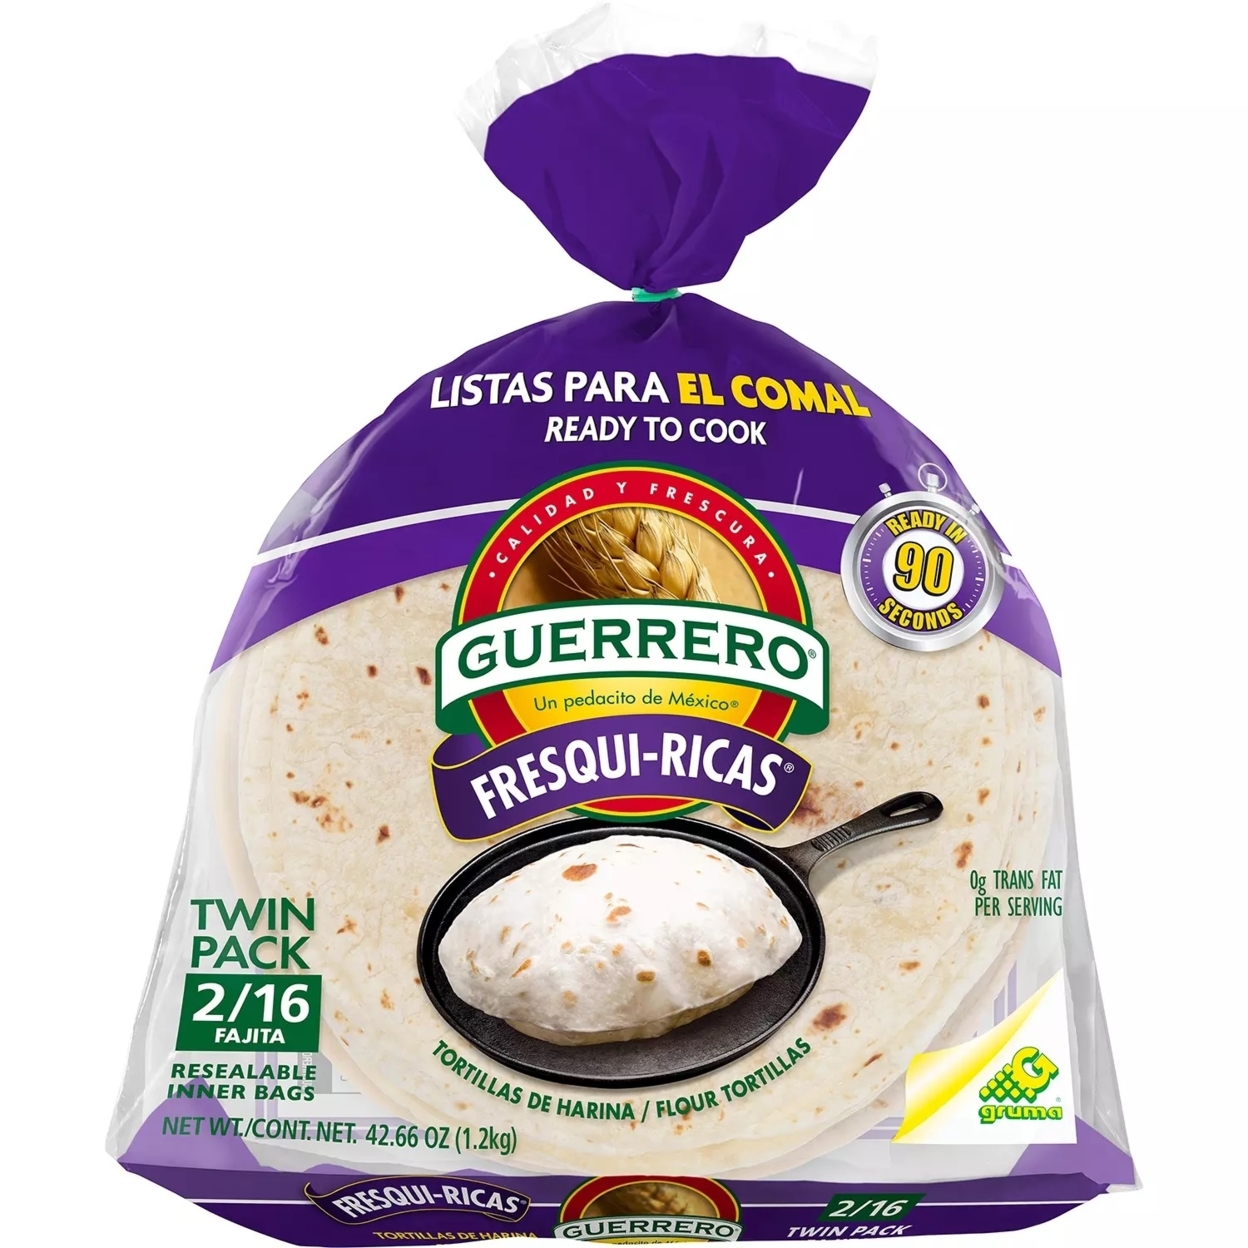 Guerrero Fresqui-Ricas Flour Tortillas (32 Count)